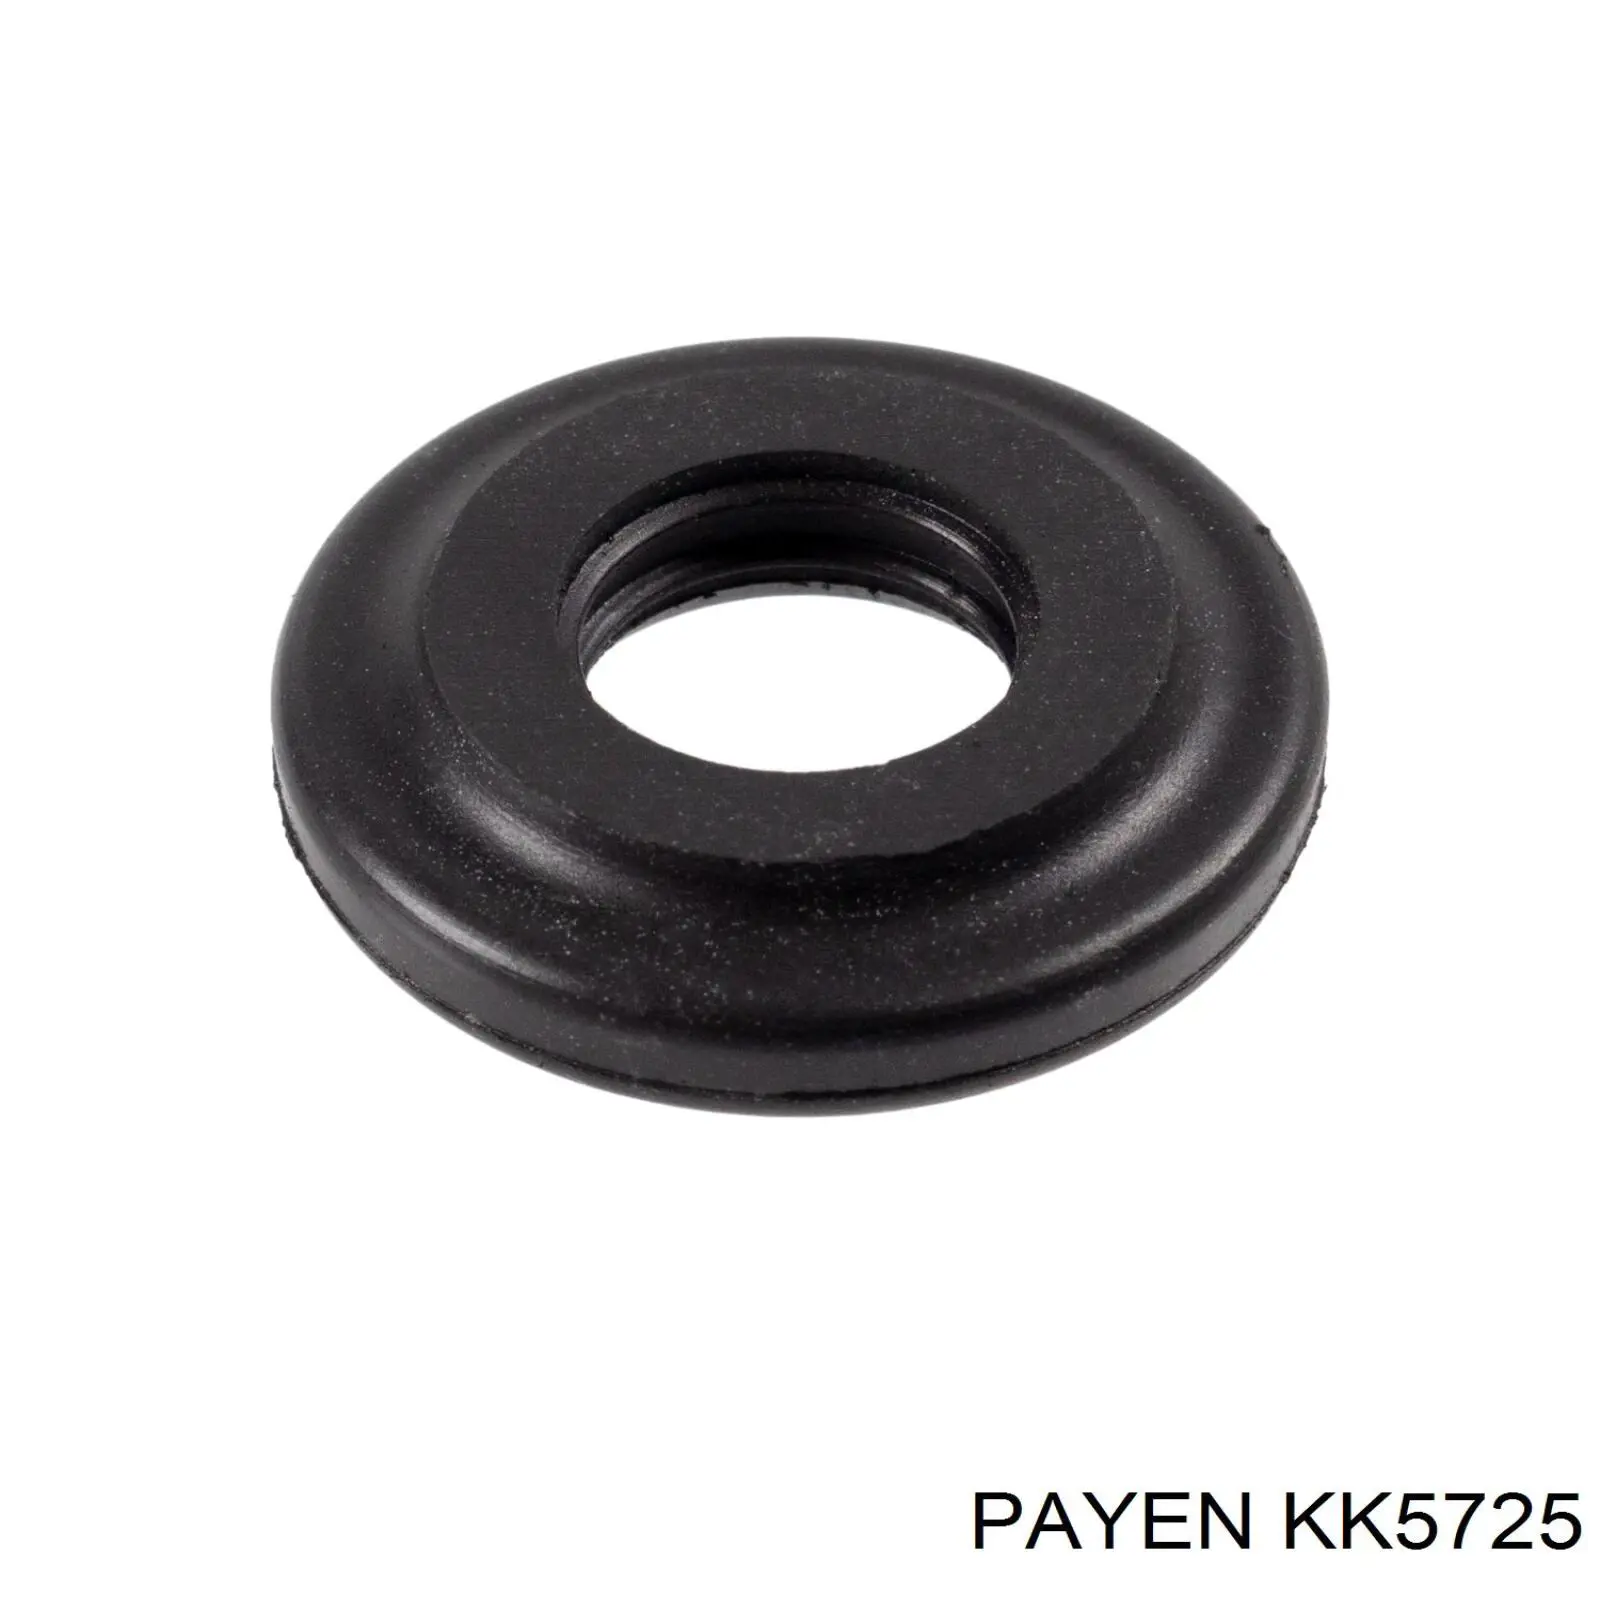 KK5725 Payen junta, tapa de culata de cilindro, anillo de junta